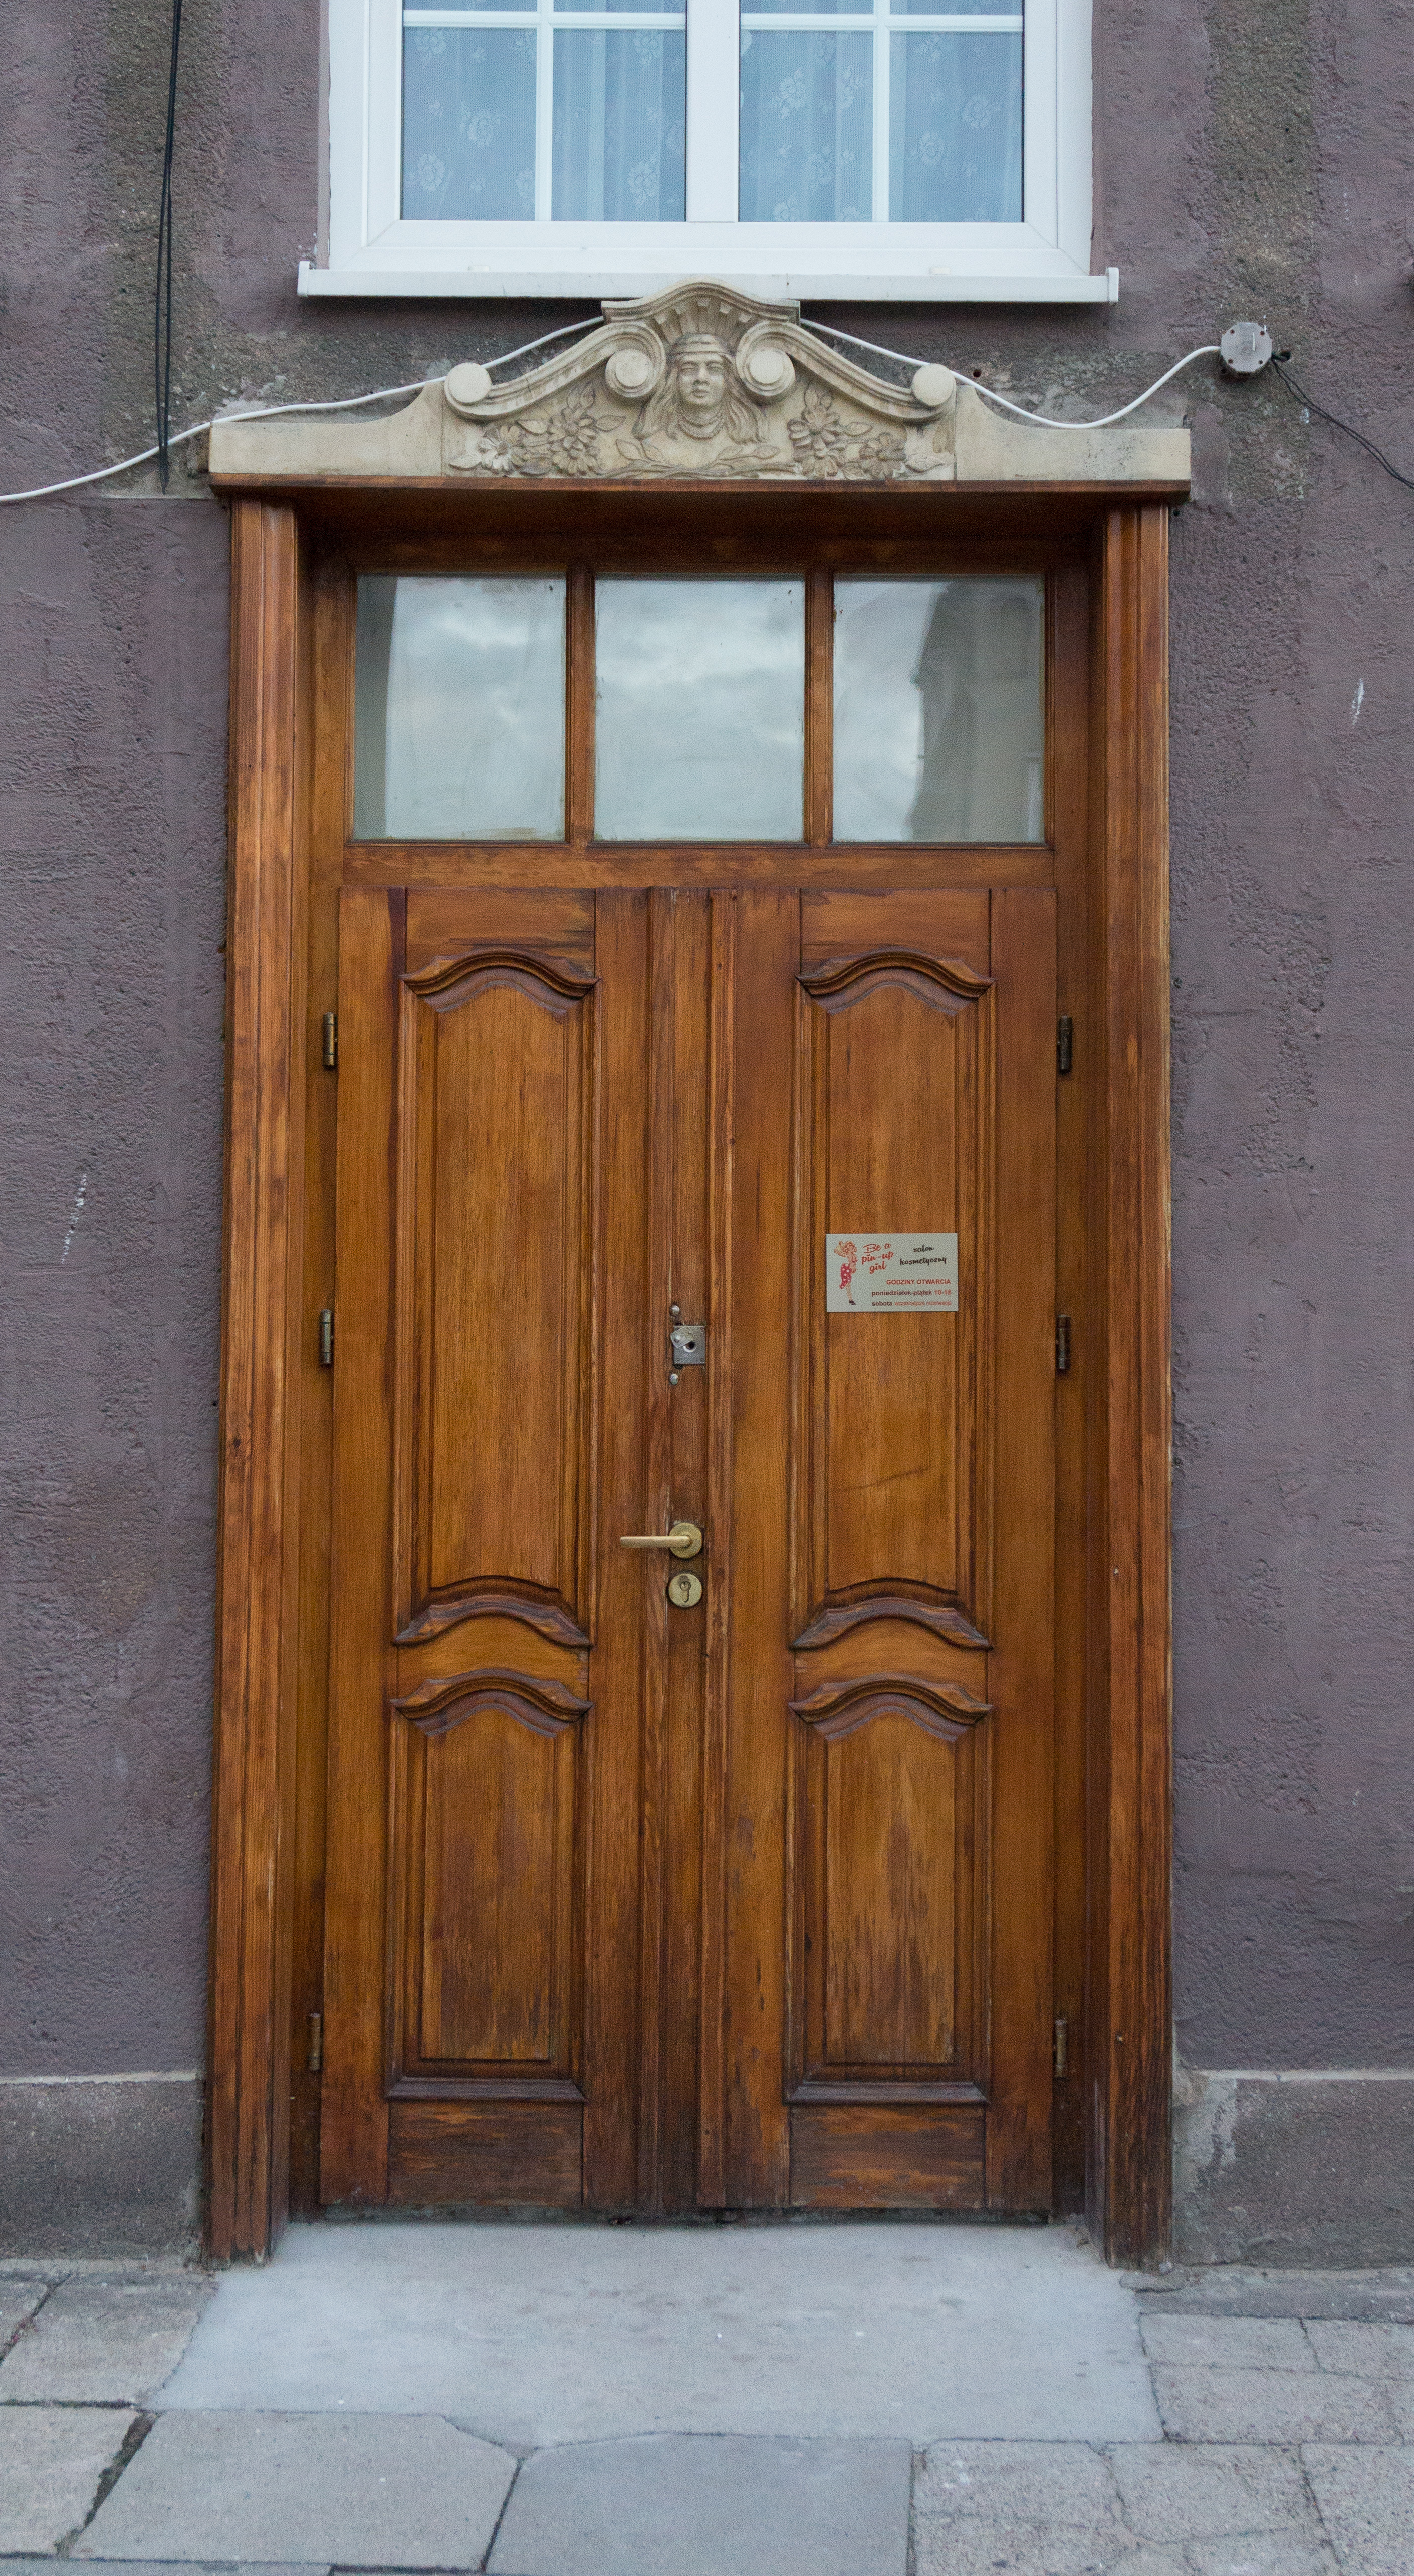 Brown wooden door - Doors - Texturify - Free textures